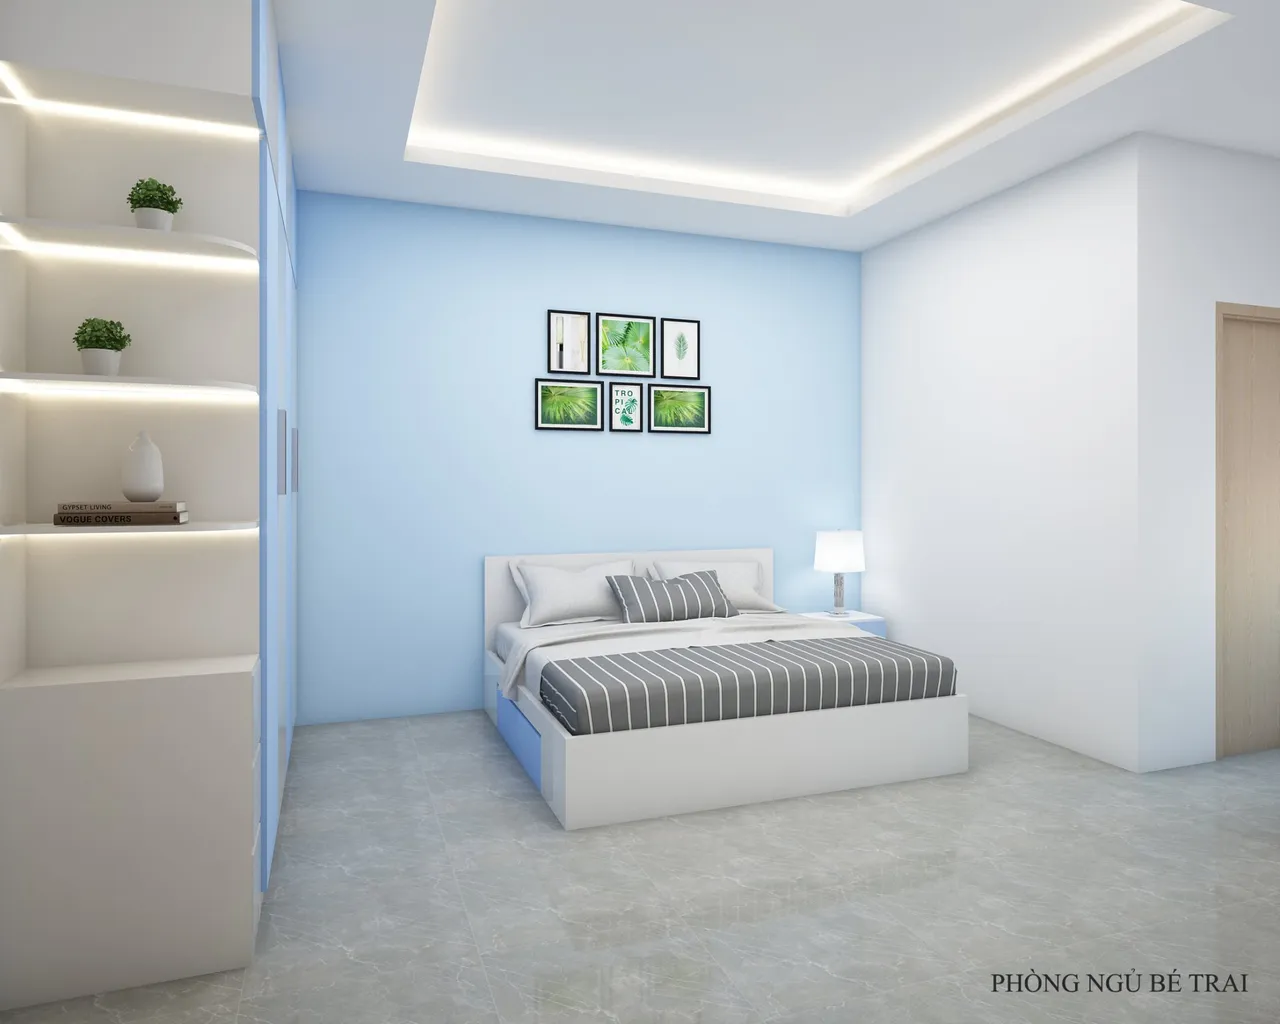 Concept nội thất phòng ngủ bé trai Nhà phố Quận 12 phong cách Tối giản Minimalist